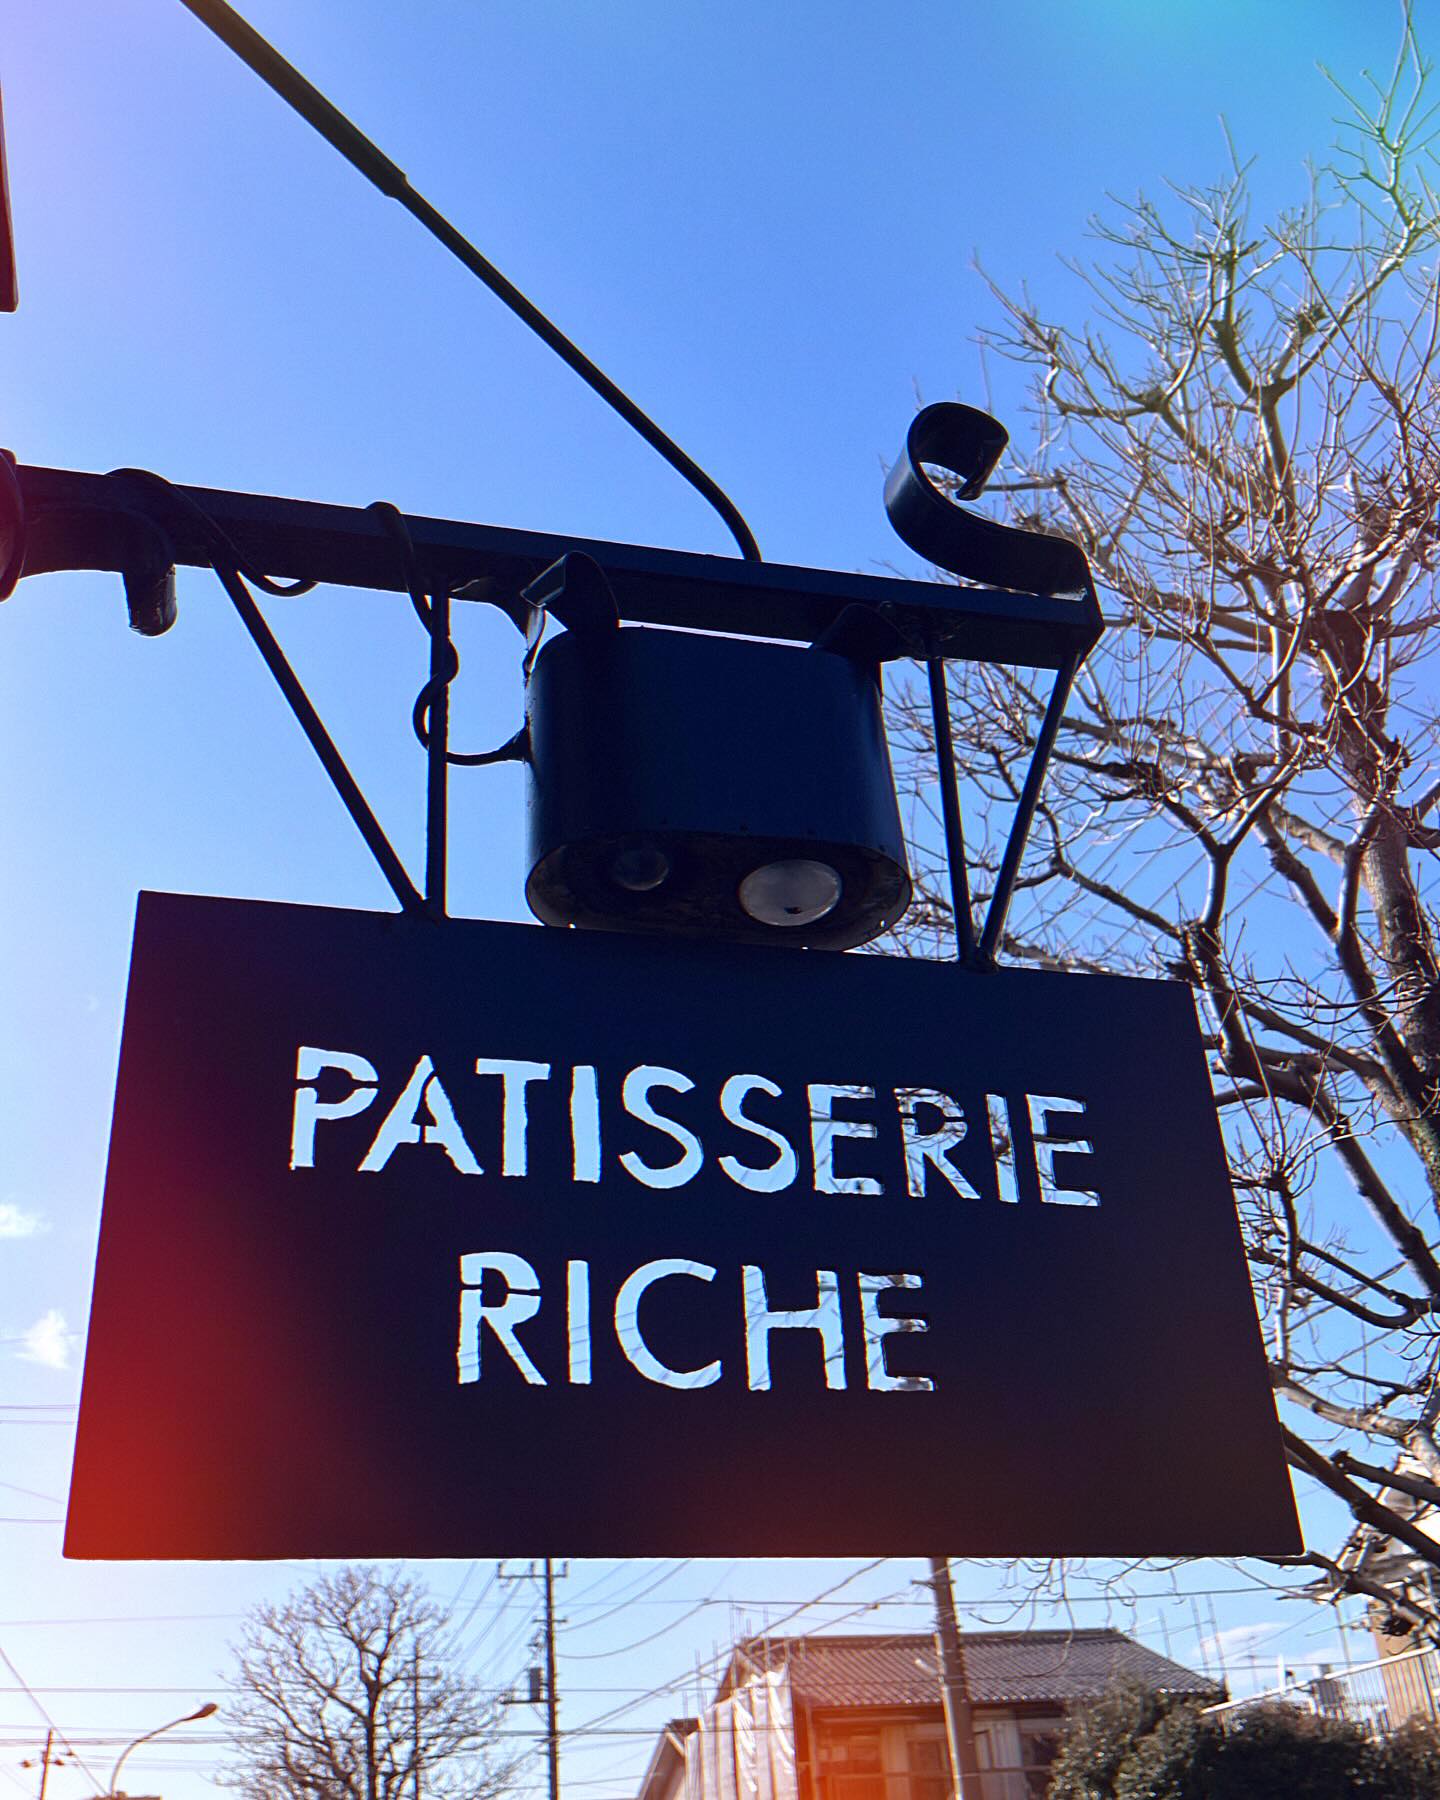 from Patisserie Riche (パティスリー•リッシュ)

Café de Riche (カフェ•ド•リッチ)に併設のスイーツショップPatisserie Riche (パティスリー•リッシュ)も独自のアカウントで皆様への情報発信を始めました❣️
これからもひとつひとつのスイーツを丁寧に作り皆様にお届けしたいと思います。
新たな取り組みのアイデアも盛りだくさん用意していますので、ぜひ楽しみにして下さい
こじんまりですが、温かい居心地の良い雰囲気作りを心掛け、皆様を店舗にてお待ちしております️
#熊谷カフェ•ド•リッチ